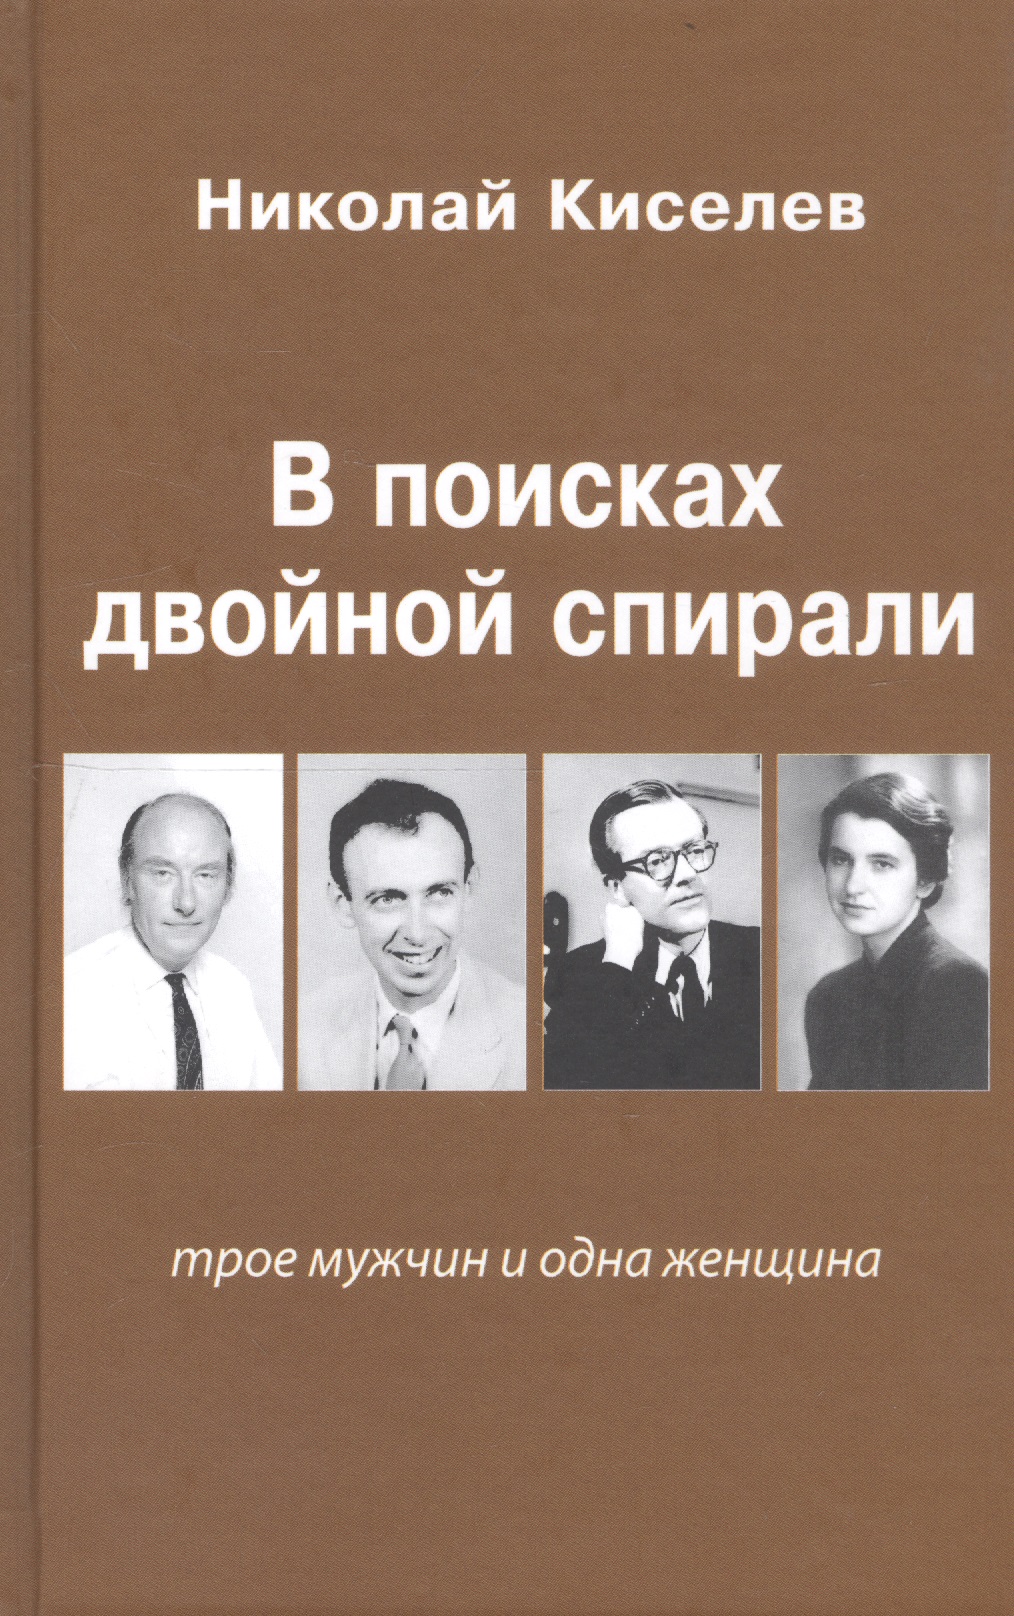 Киселев Николай В поисках двойной спирали: трое мужчин и одна женщина